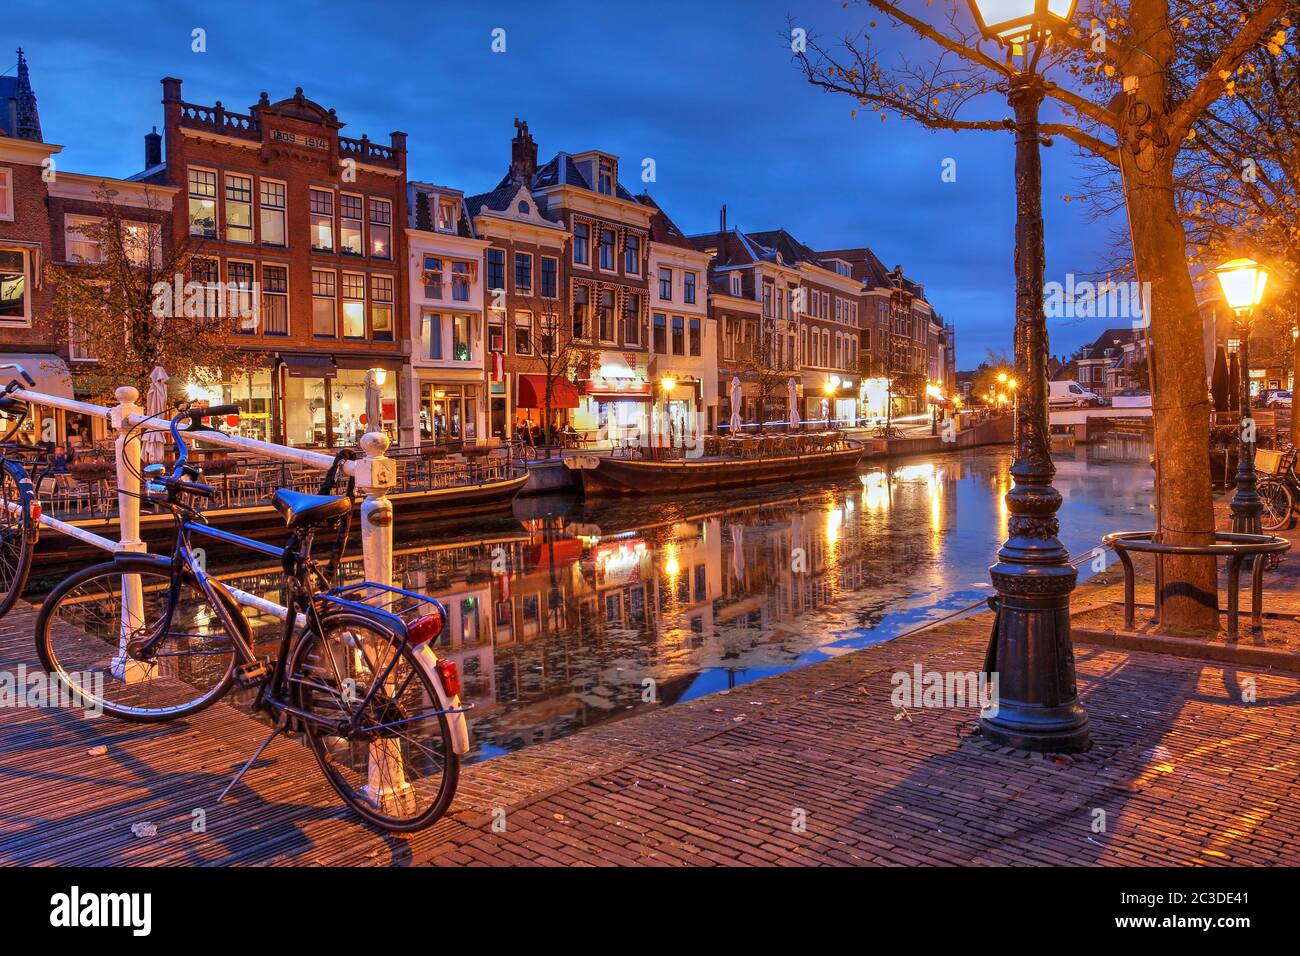 Nachtszene in Leiden, Niederlande mit alten Häusern am Nieuwe Rijn Kanal. Stockfoto